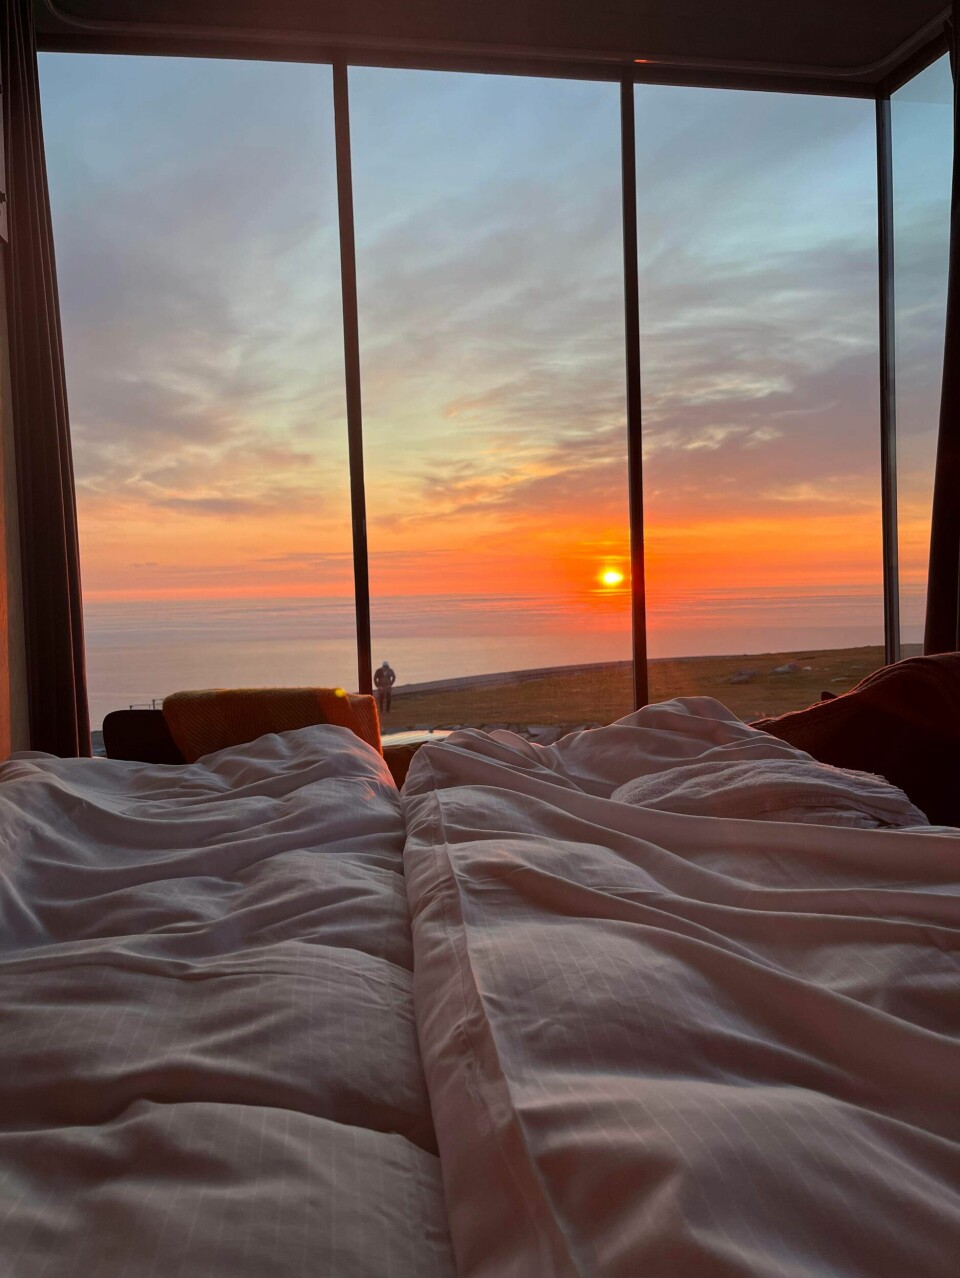 Utsikt til en rød solnedgang over hav og landskap sett fra ei seng gjennom et panoramavindu